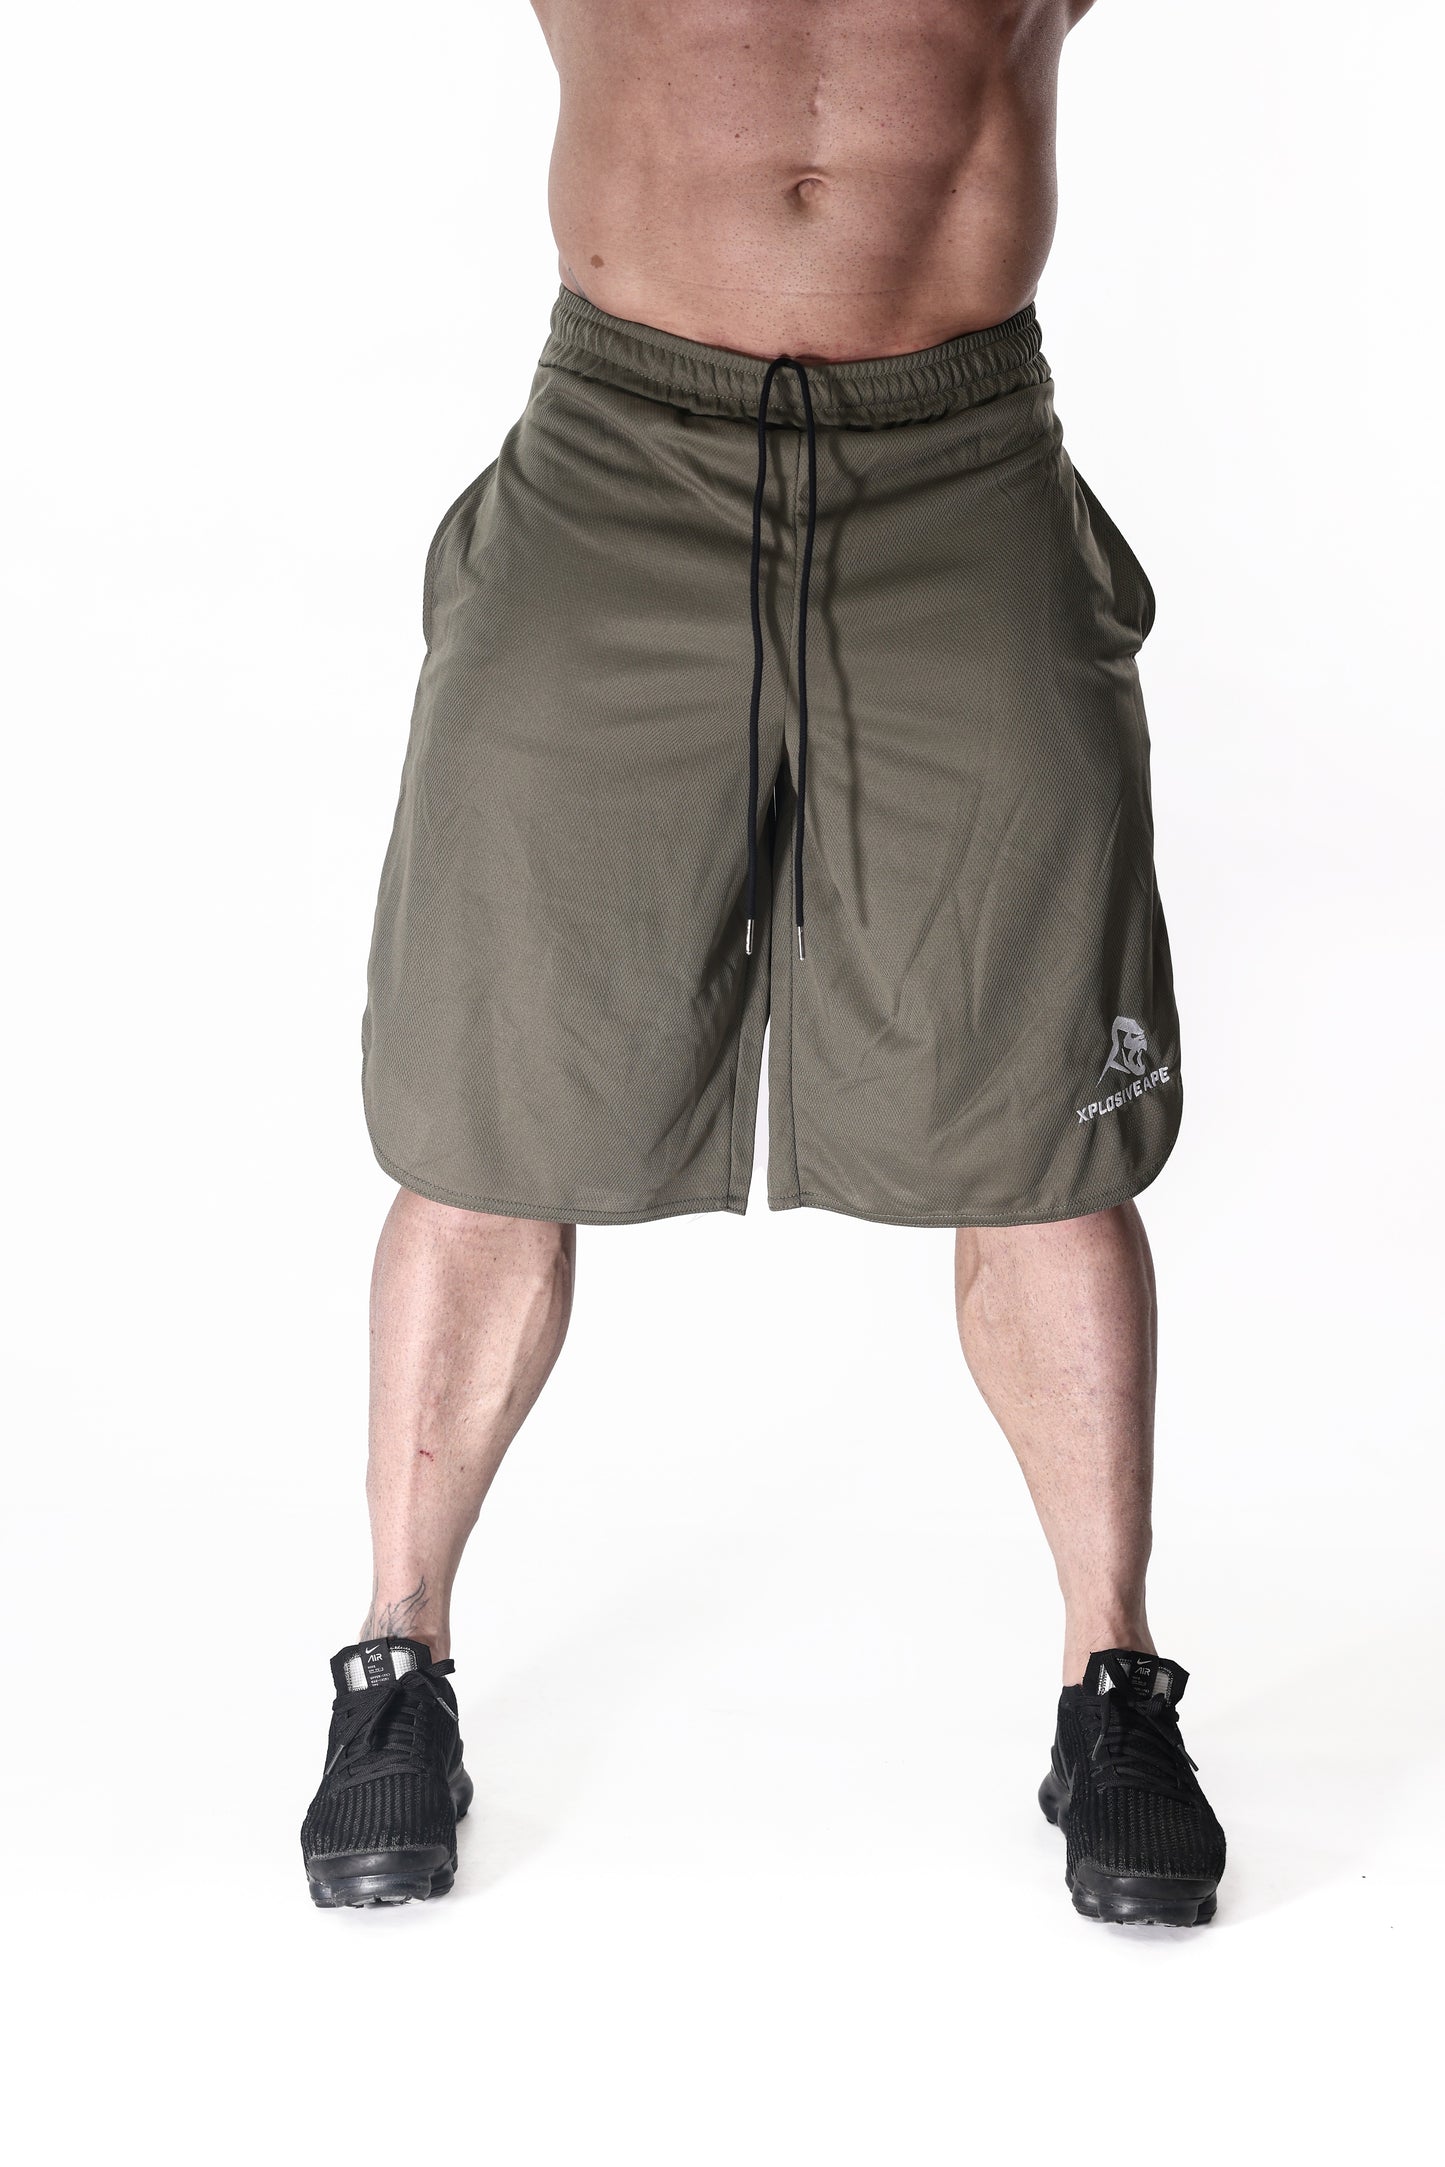 XAPE Vital Shorts - Olive